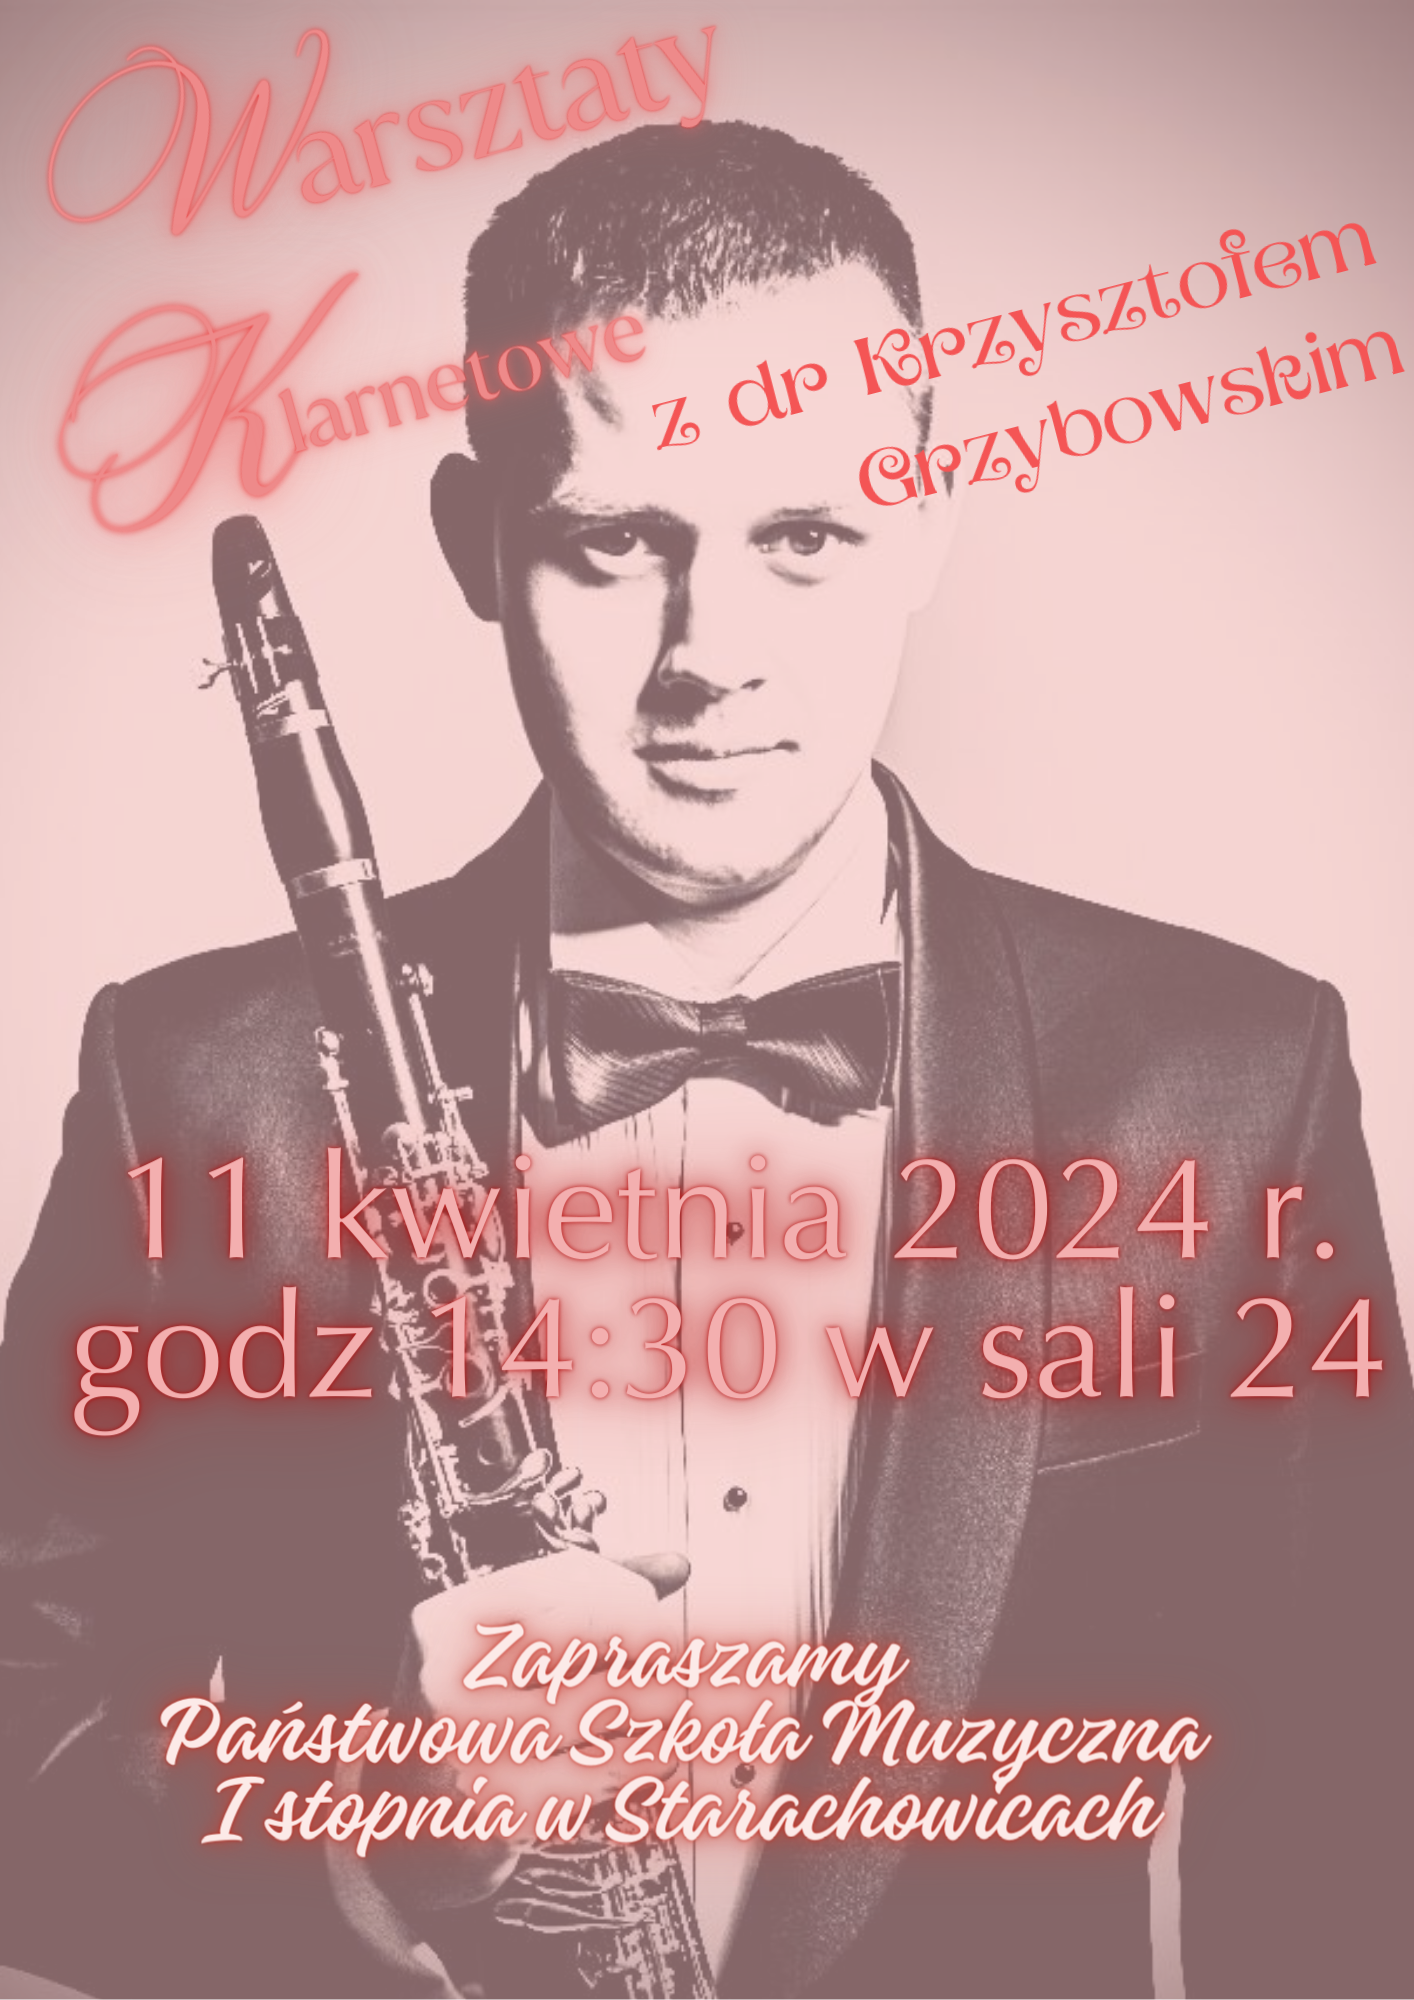 Na plakacie widocznye jest zdjęcie klarnecisty Krzysztofa Grzybowskiego trzymającego w rękach klarnet. Nad zdjęciem wszystkie napisy dotyczące miejsca i godziny koncertu.